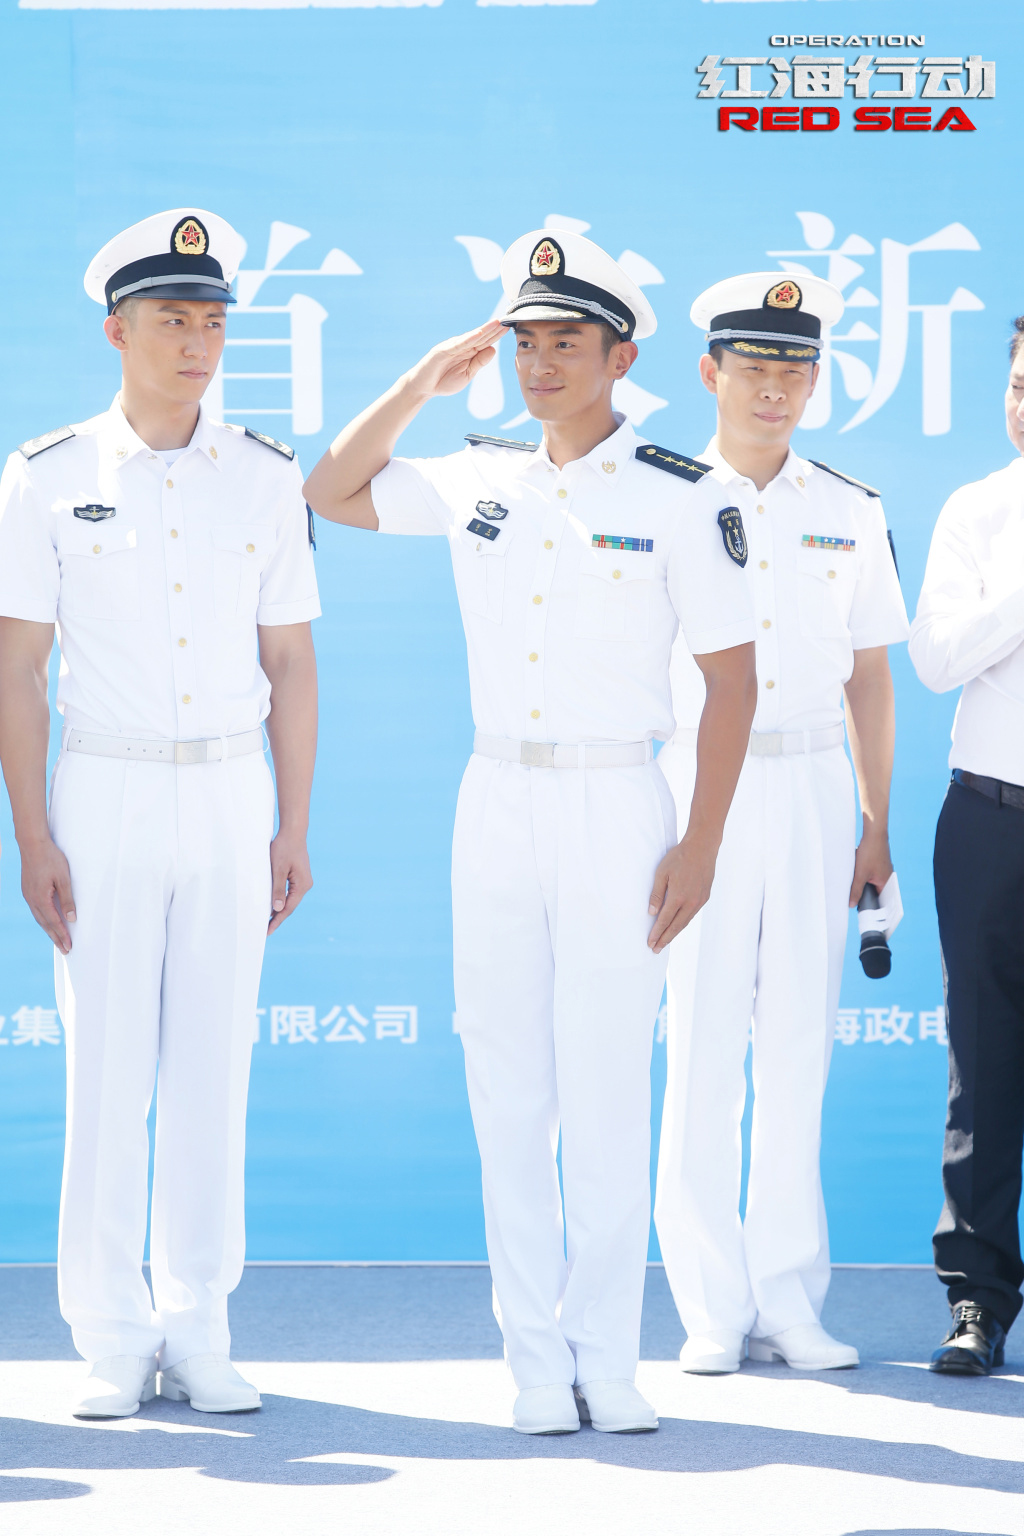 杜江红海行动白色海军装造型帅气图片46